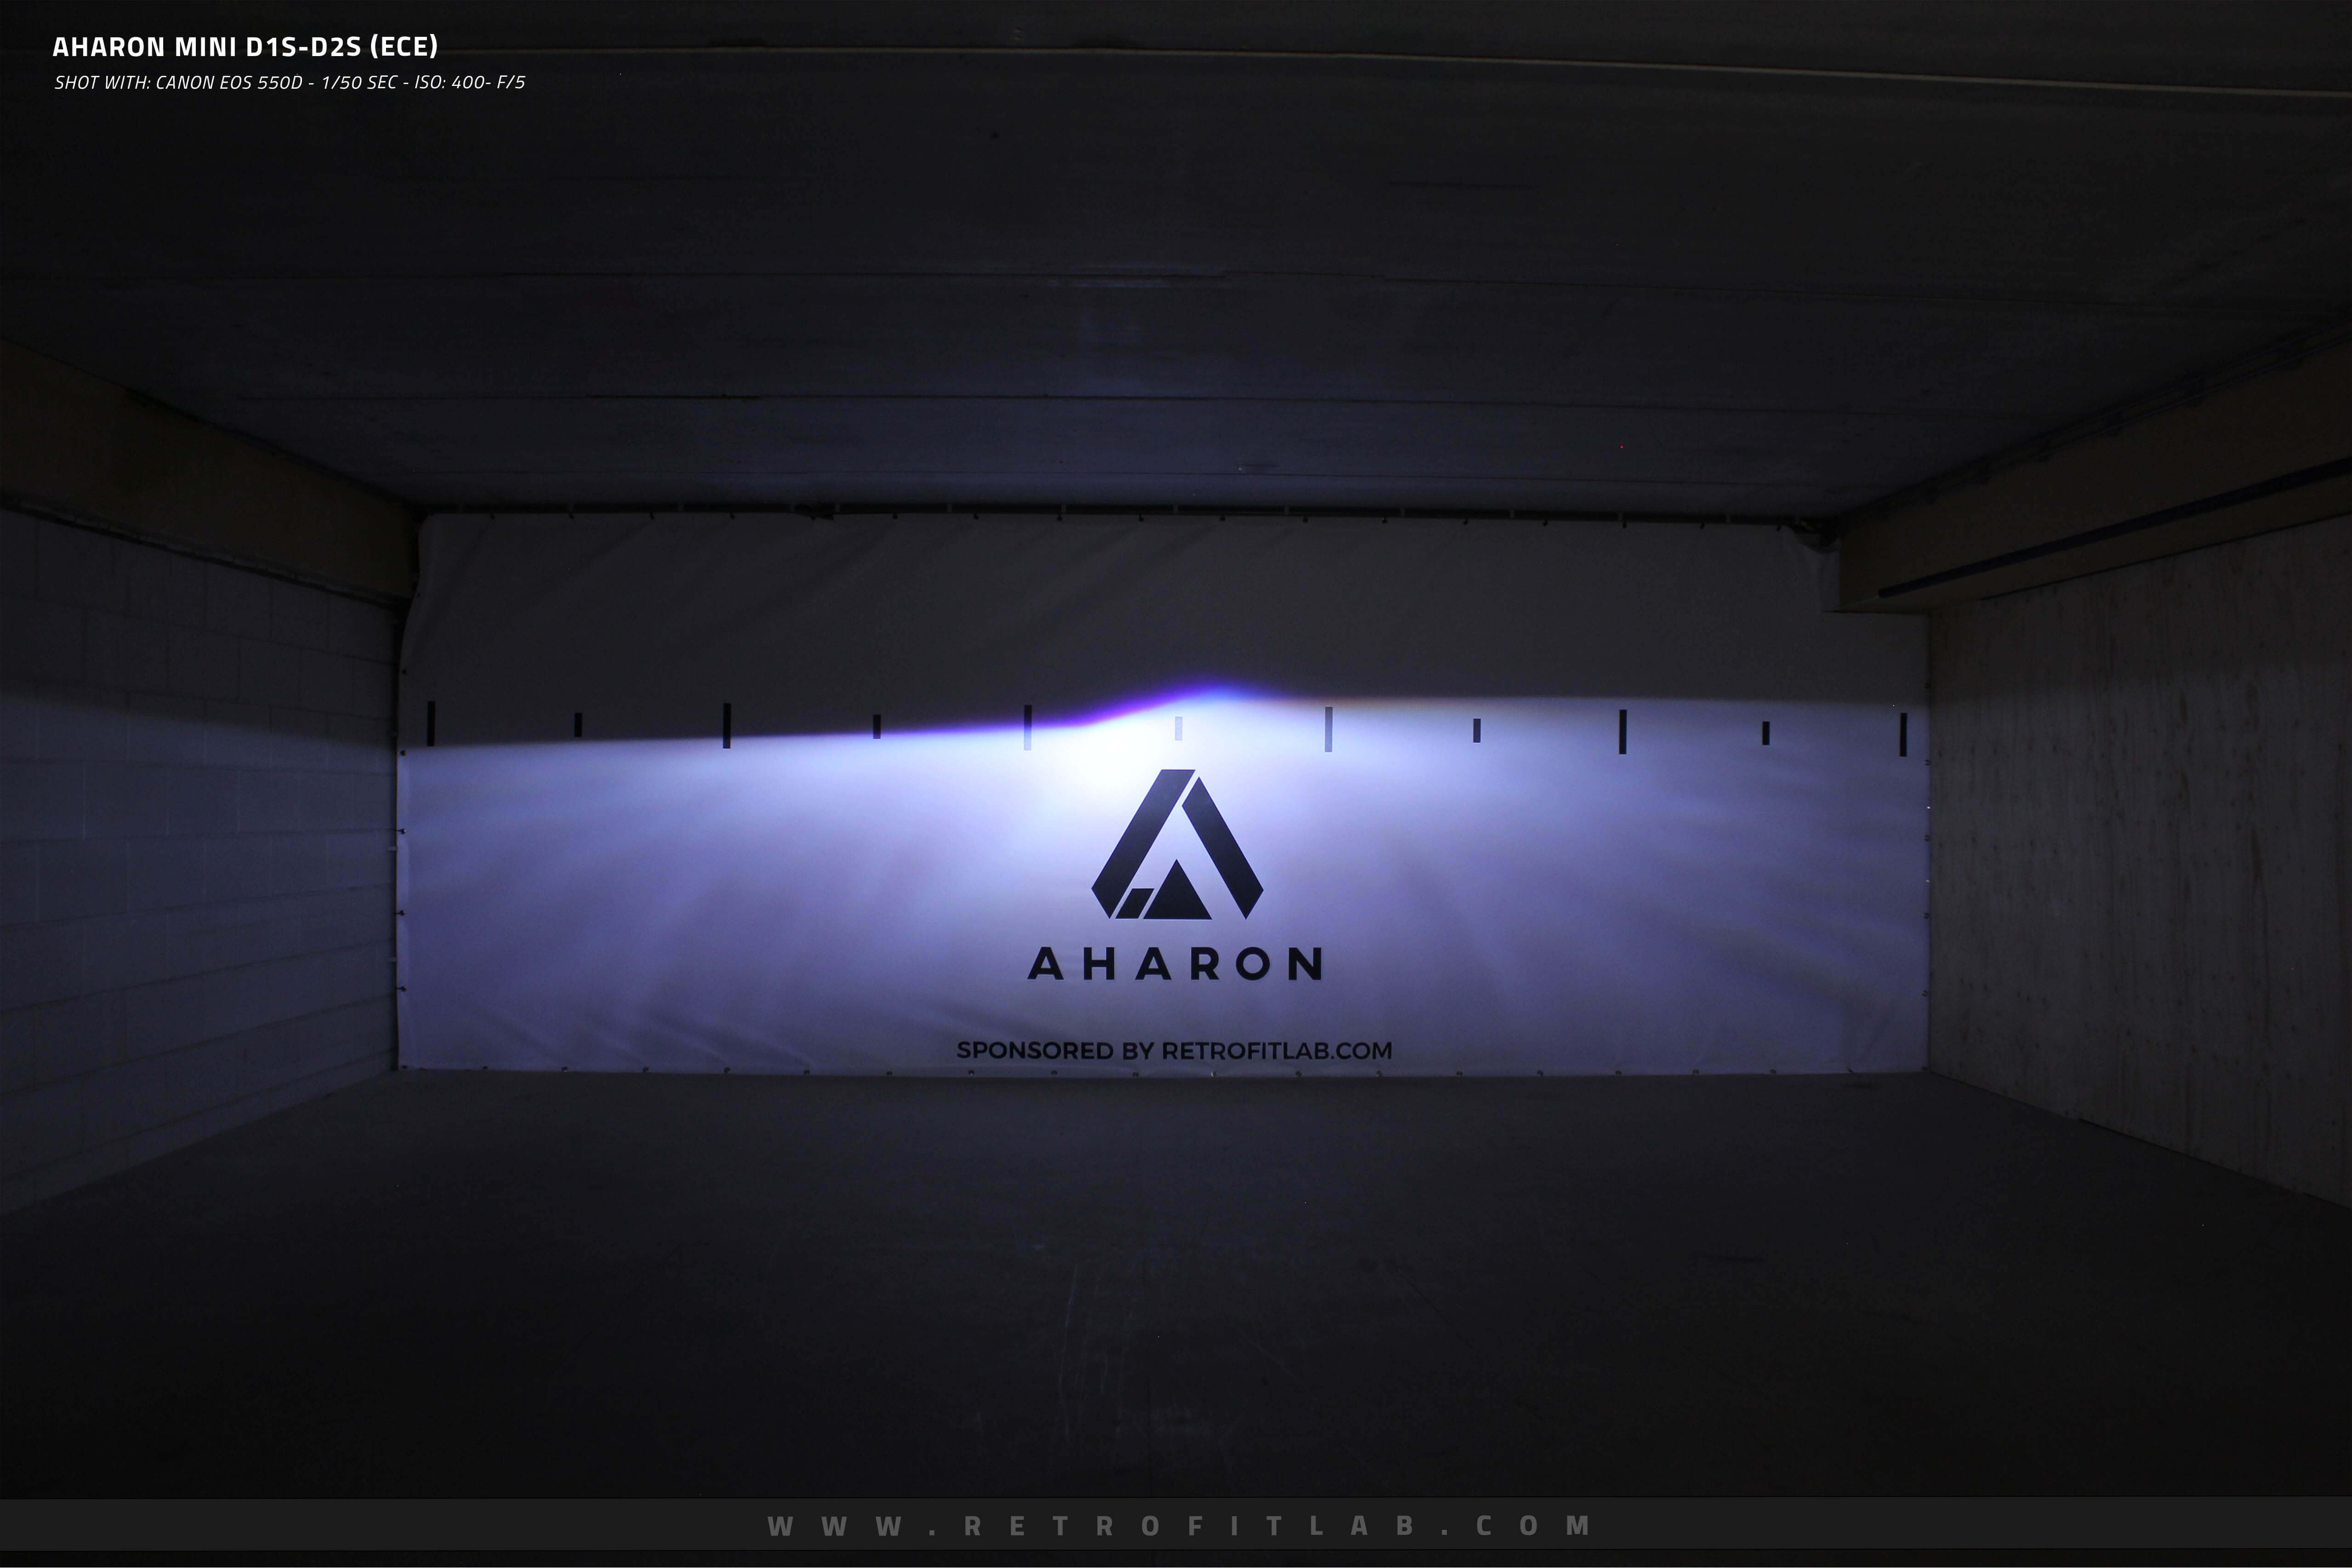 Aharon Mini D1S / D2S ECE - Bi-Xenon projectors